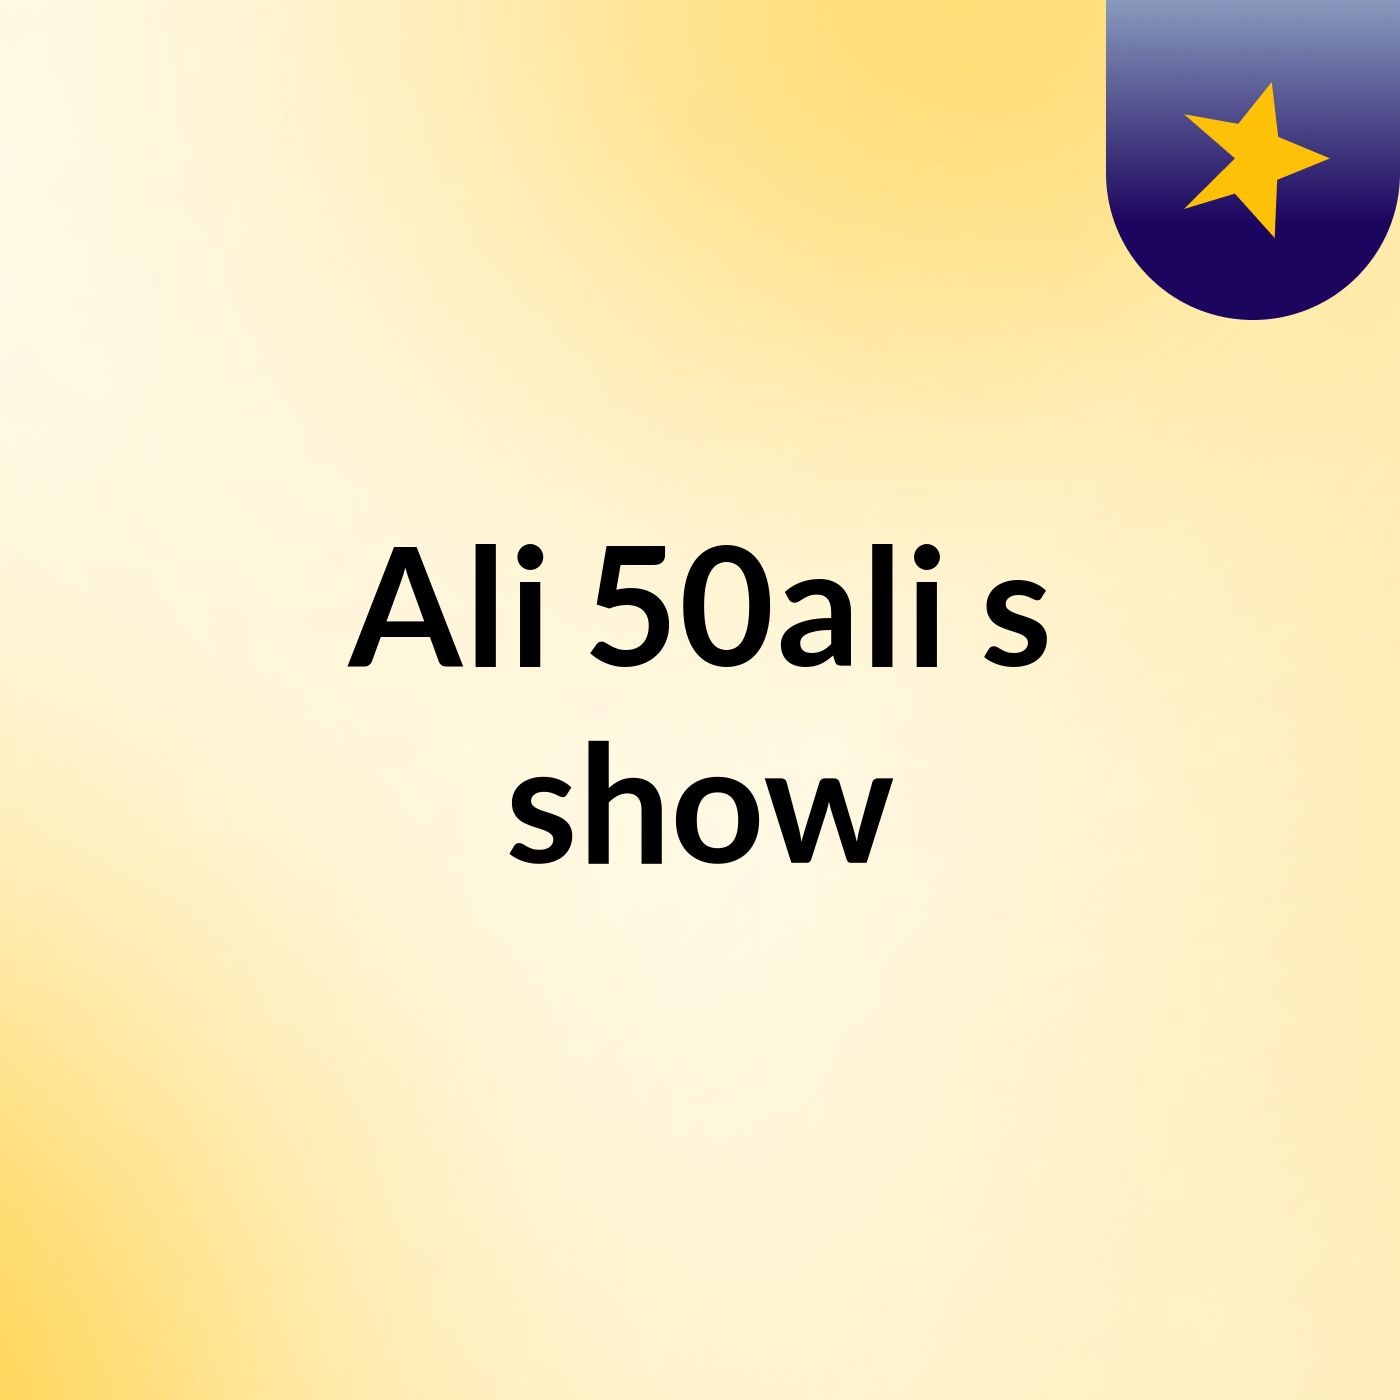 Ali 50ali's show